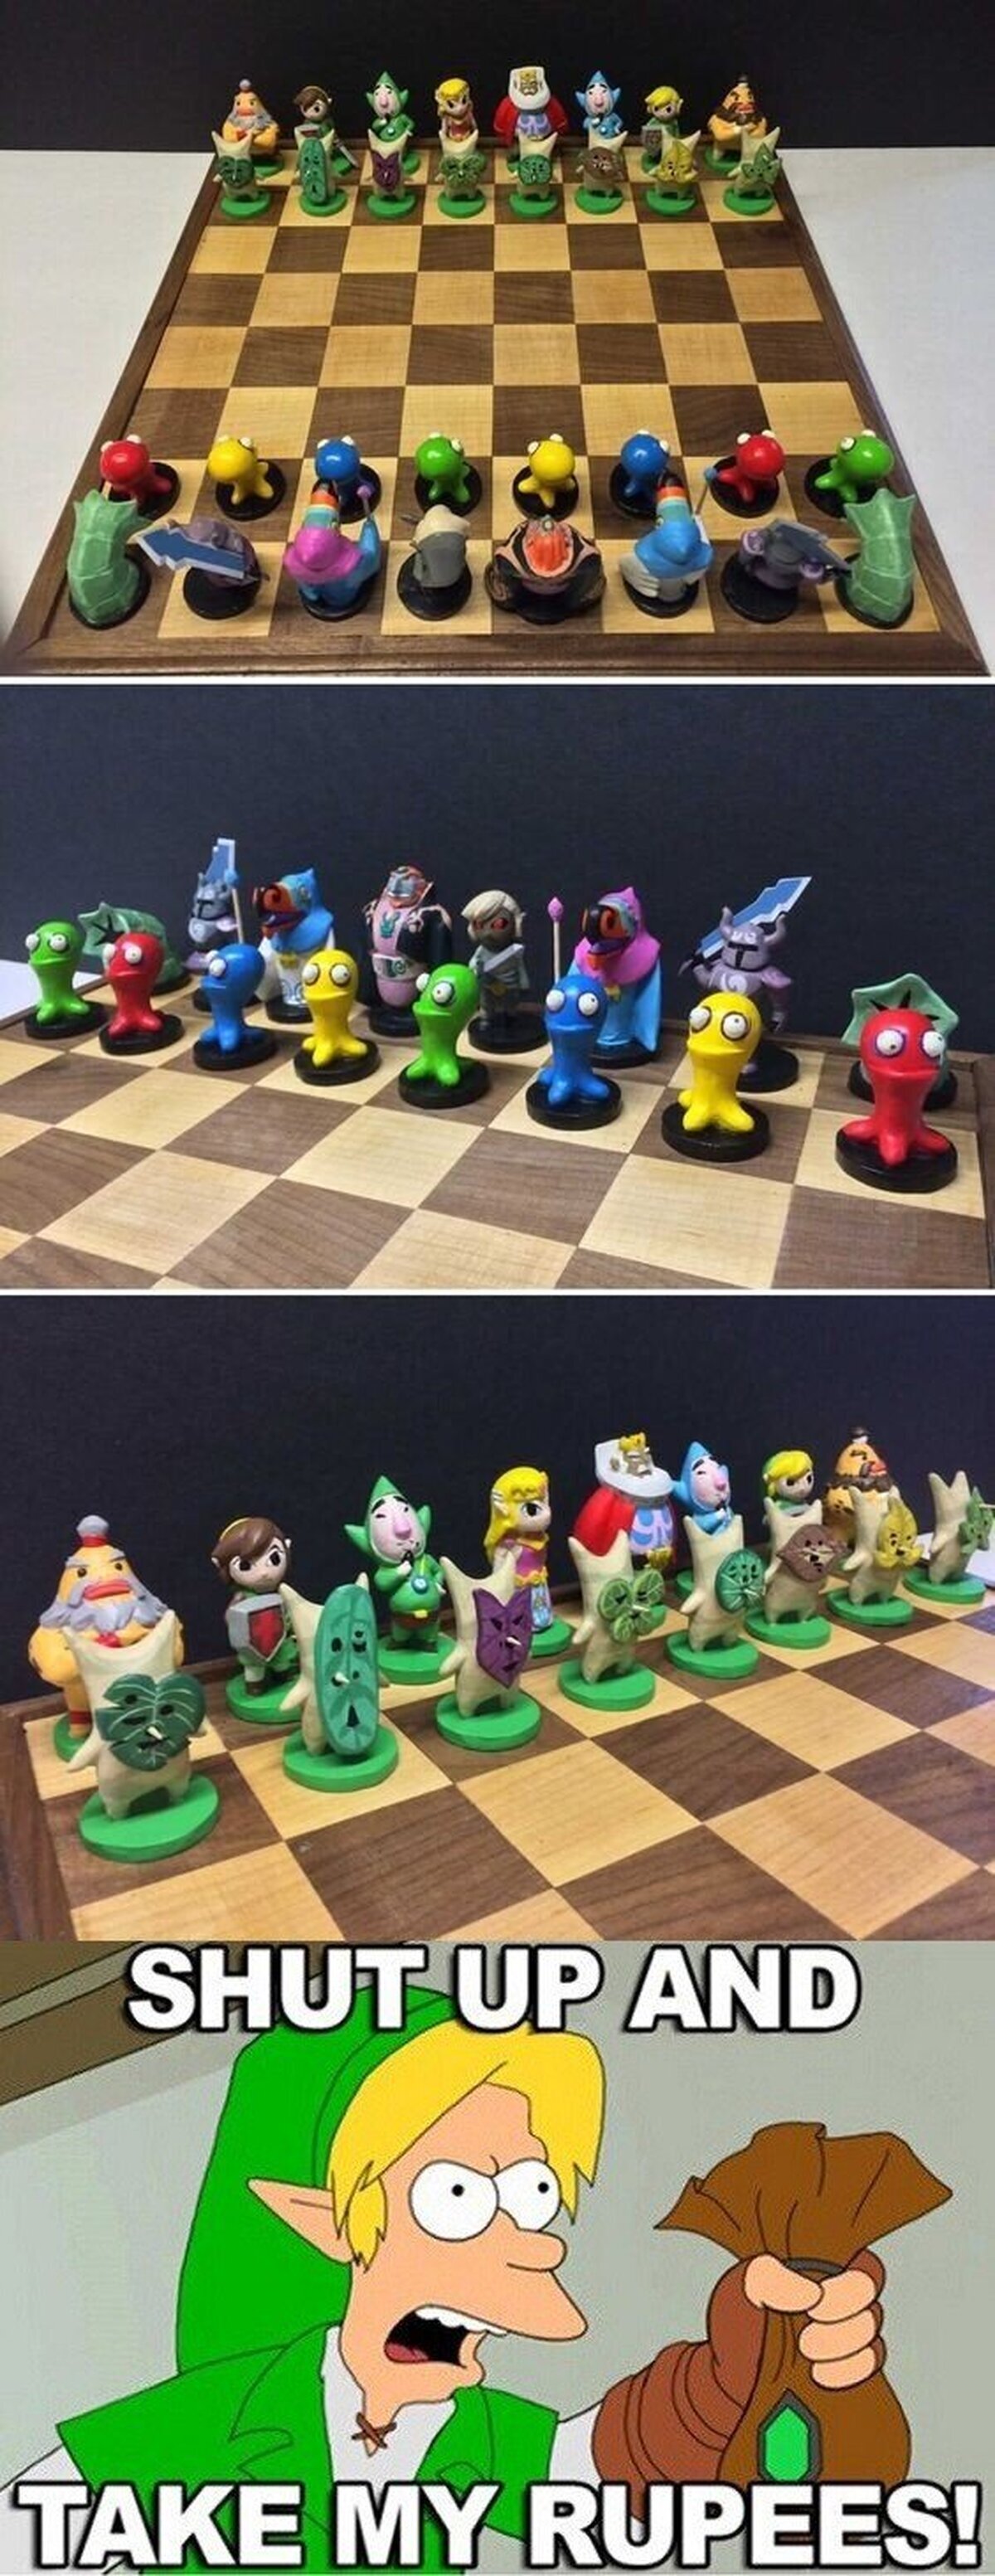 De repente me está apeteciendo jugar al ajedrez…